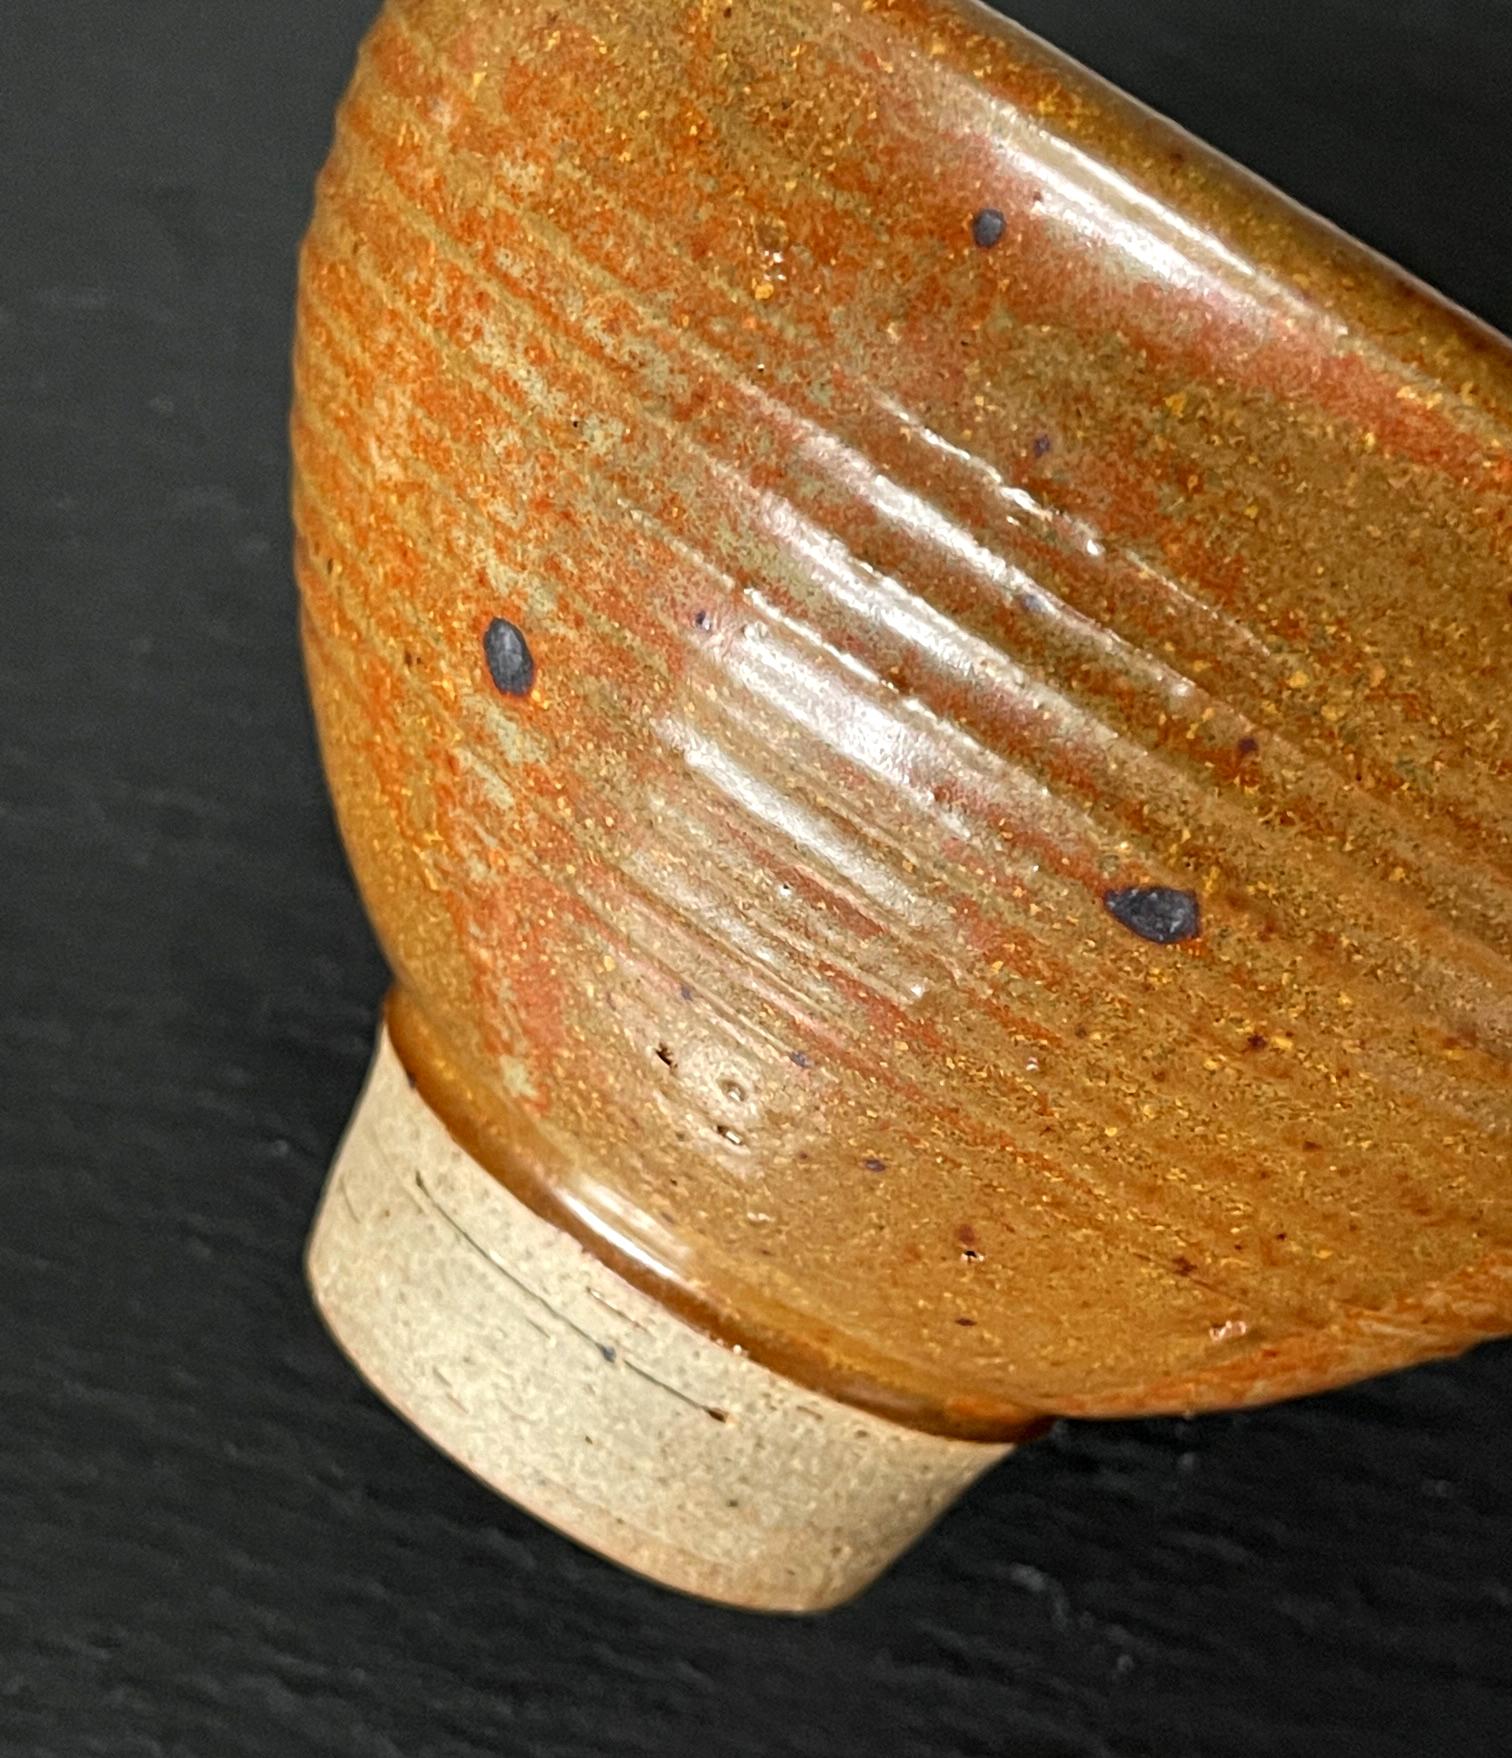 Glazed Ceramic Tea Bowl by Toshiko Takaezu 6